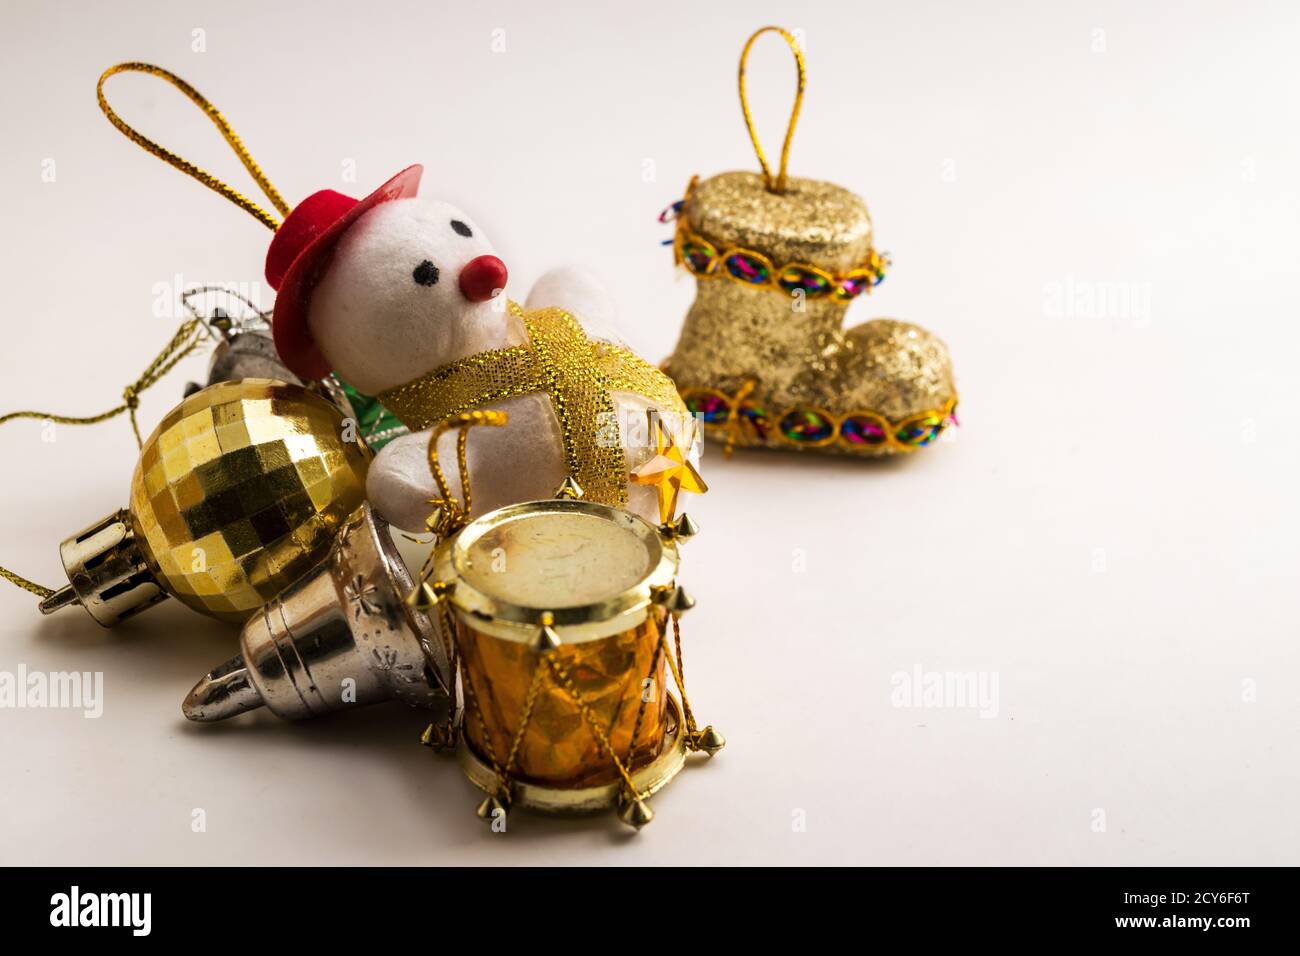 Quelques pièces de décoration de Noël contre une surface blanche, située à gauche de l'image, les couleurs dorées se distinguent. Banque D'Images